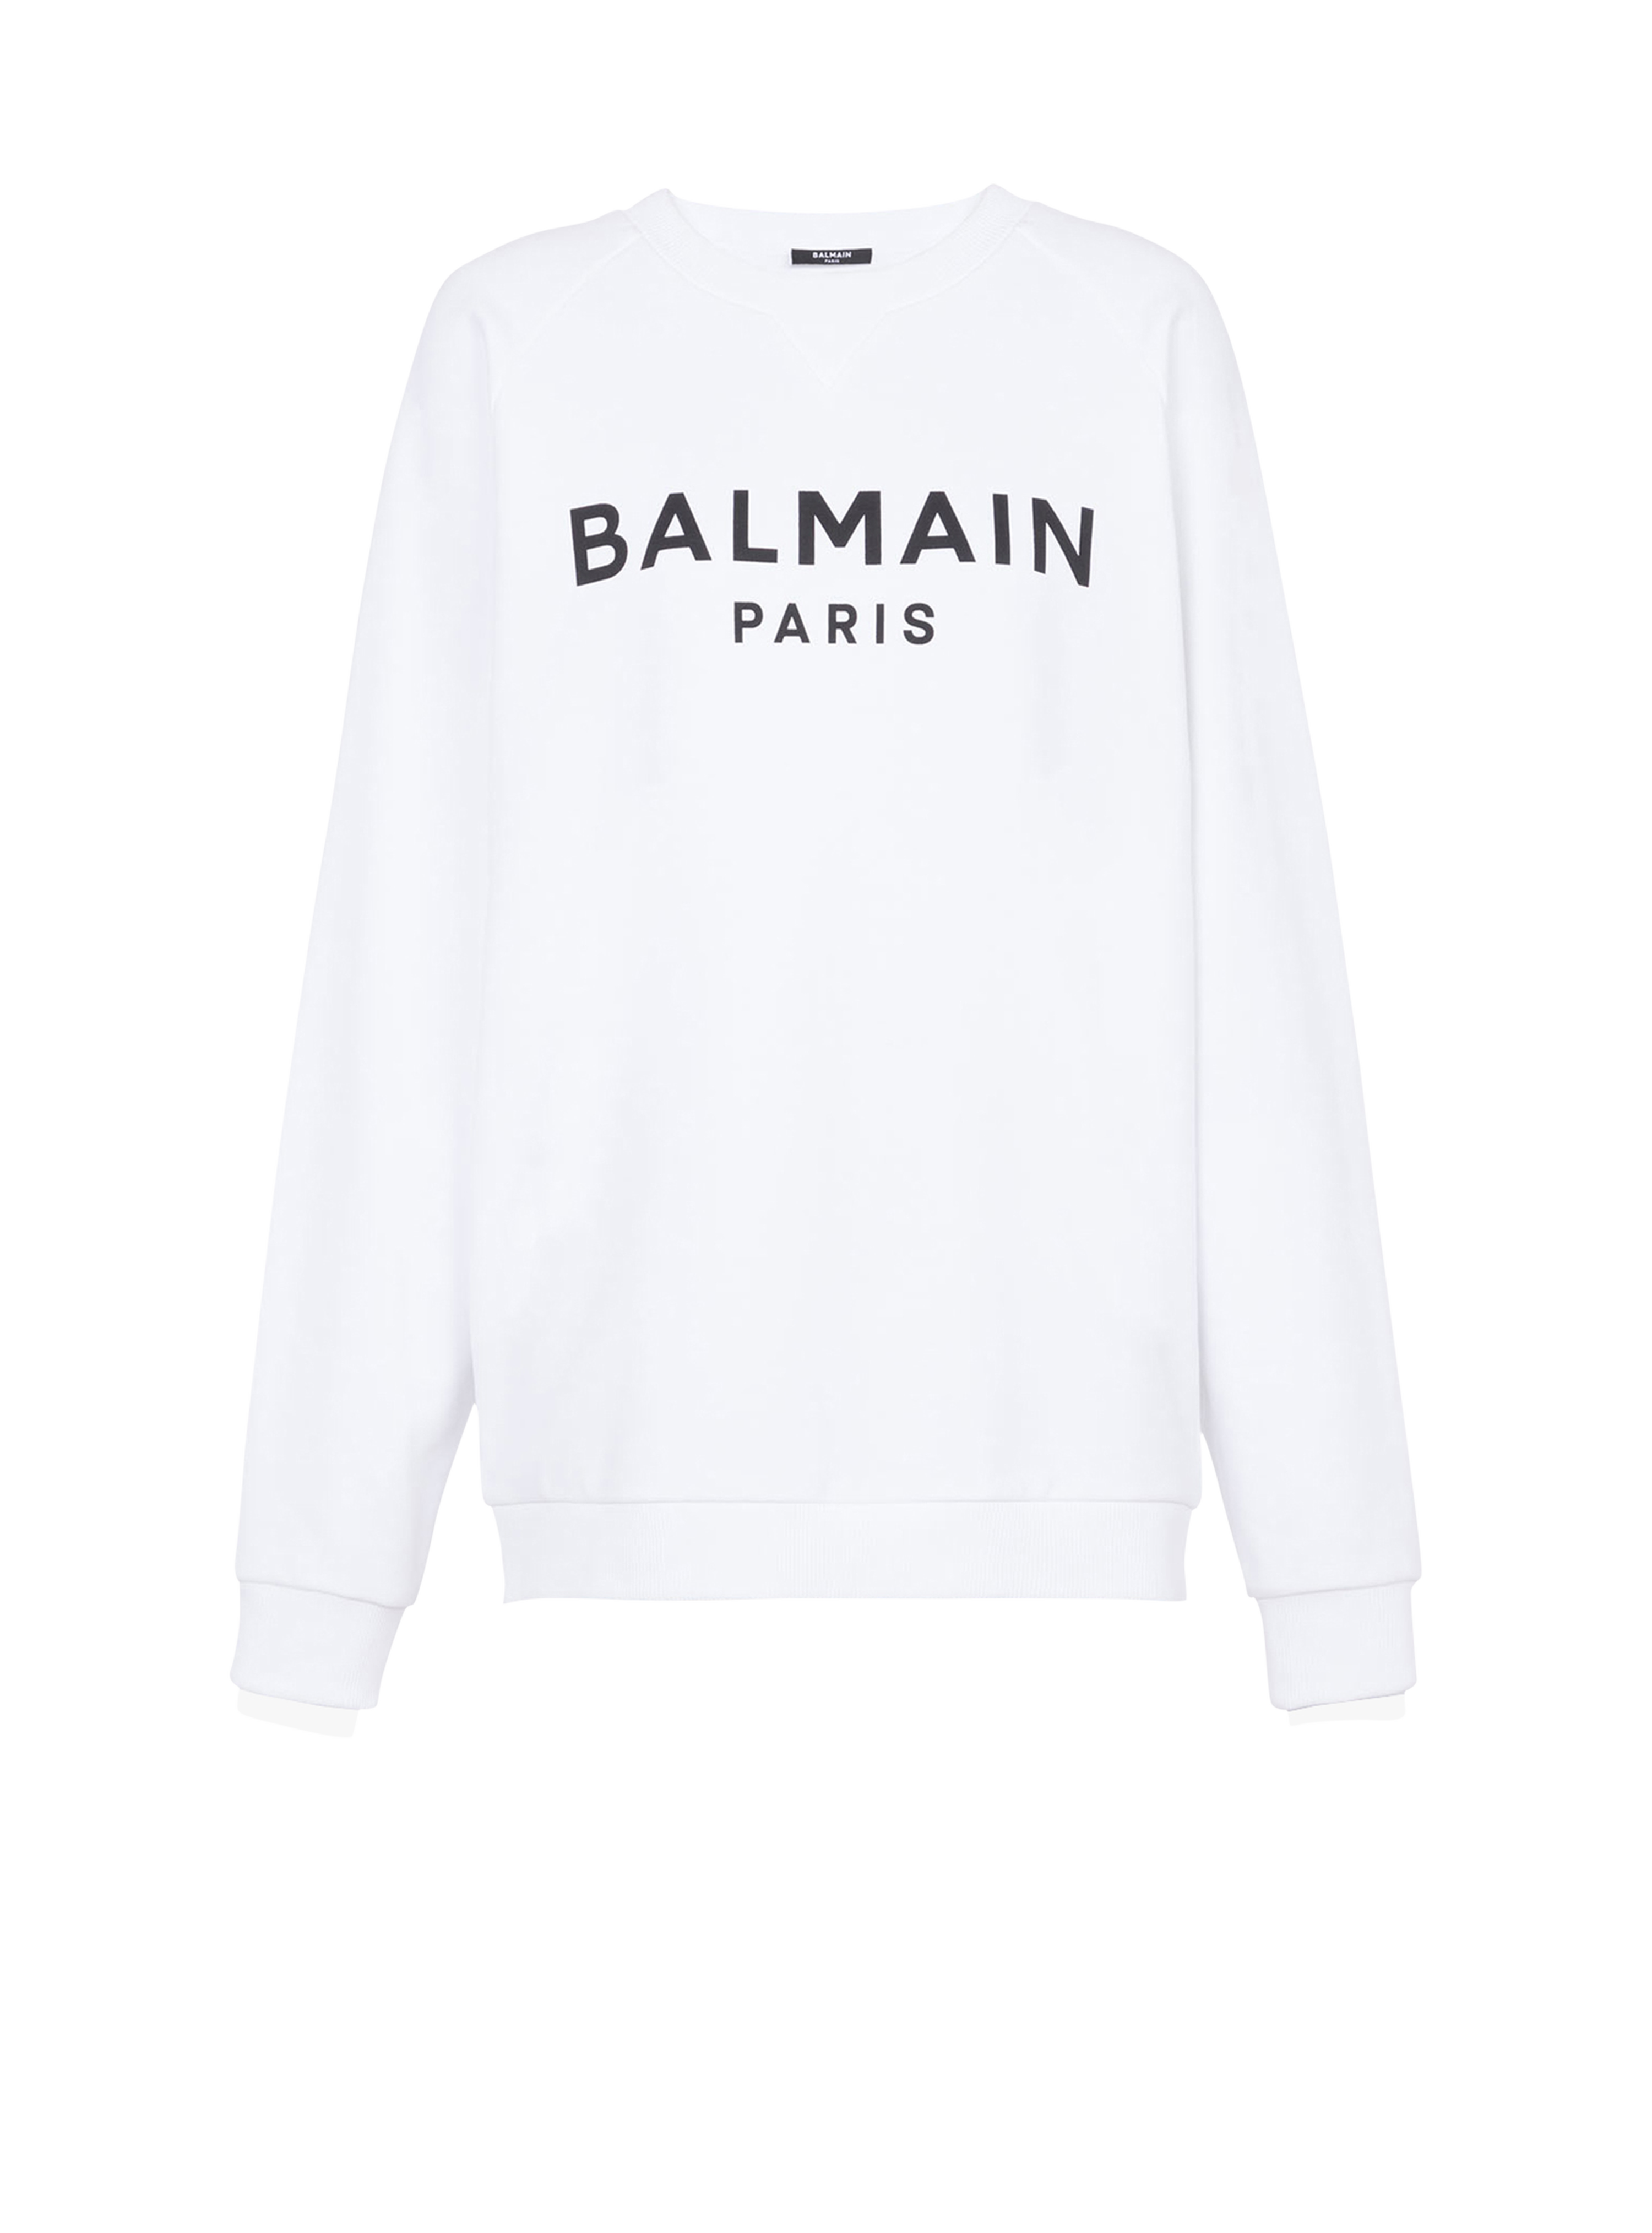 Eco-designed cotton sweatshirt with Balmain Paris logo print, white